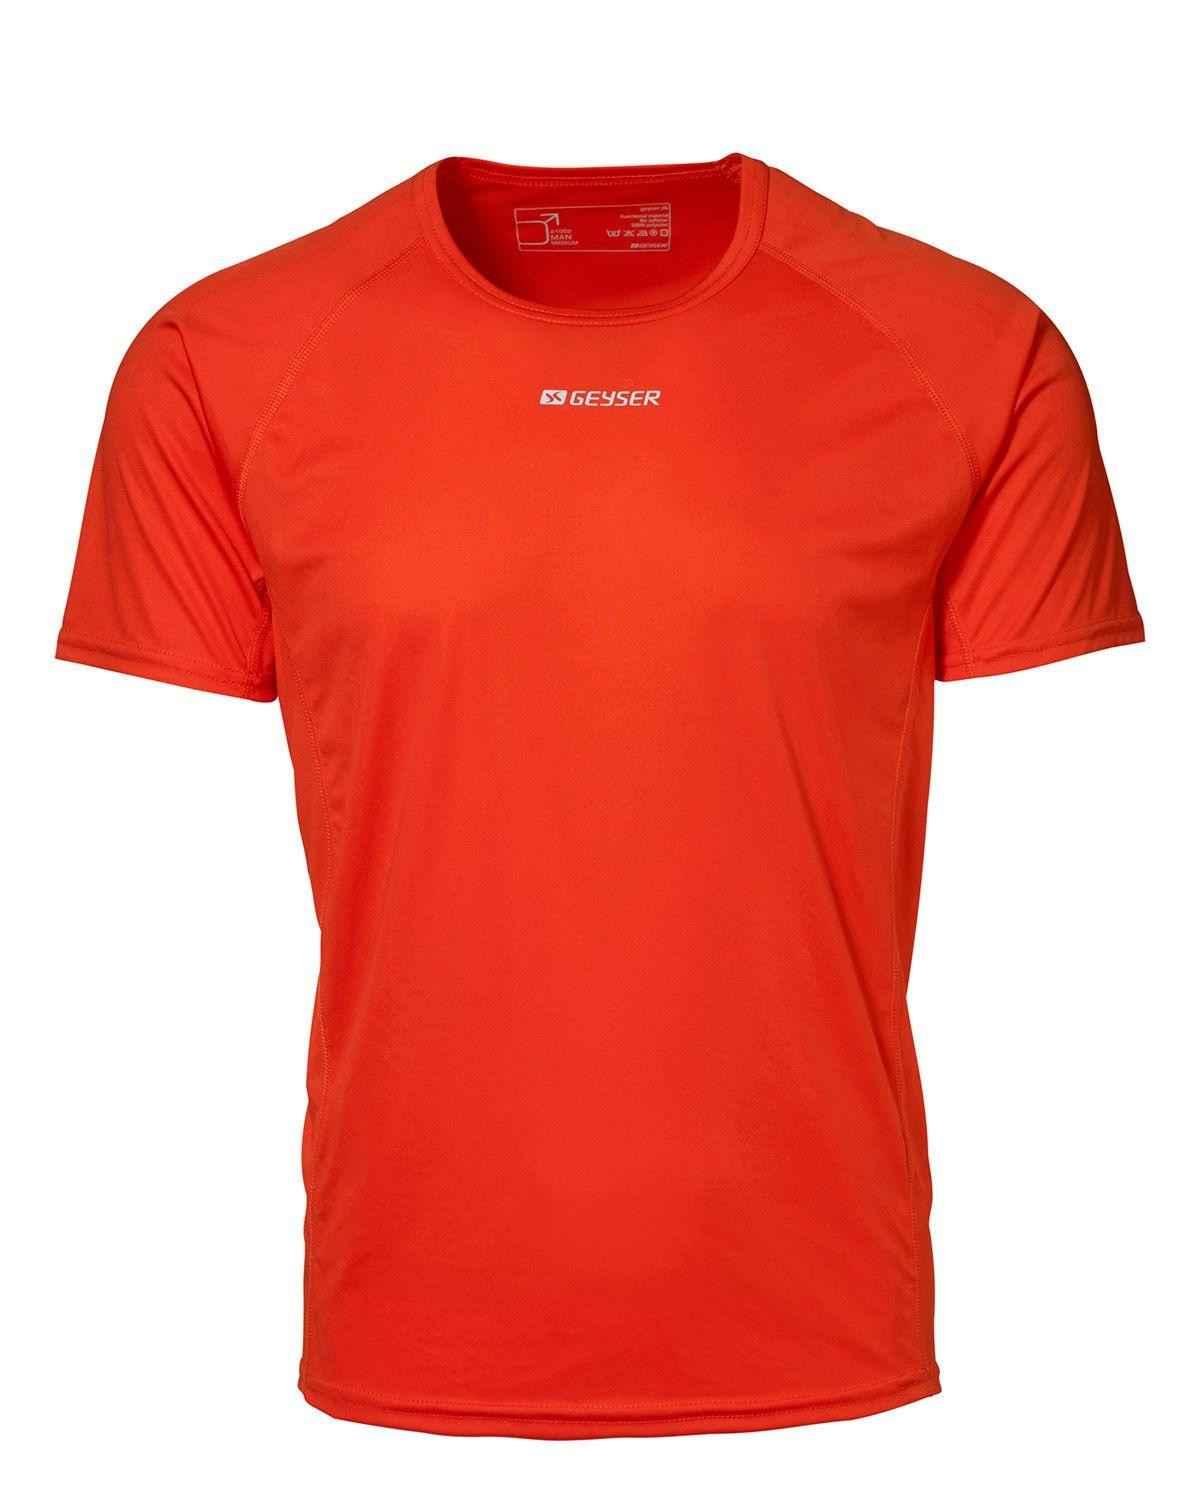 GEYSER Active T-shirt til Herre (Orange, L)